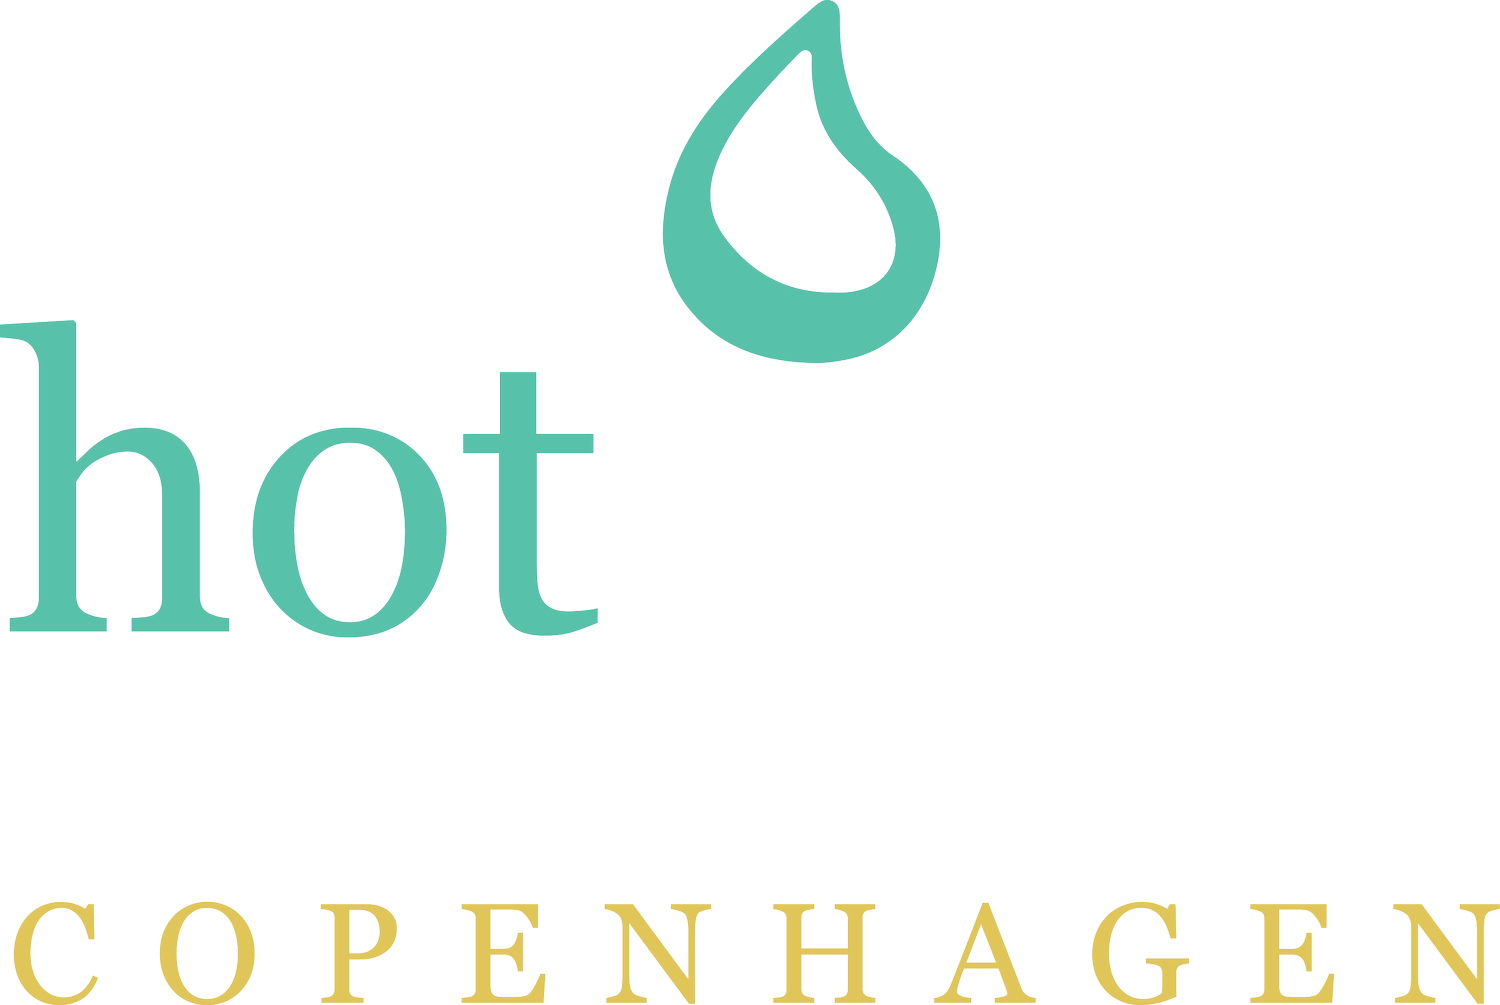 Hot Yoga Copenhagen